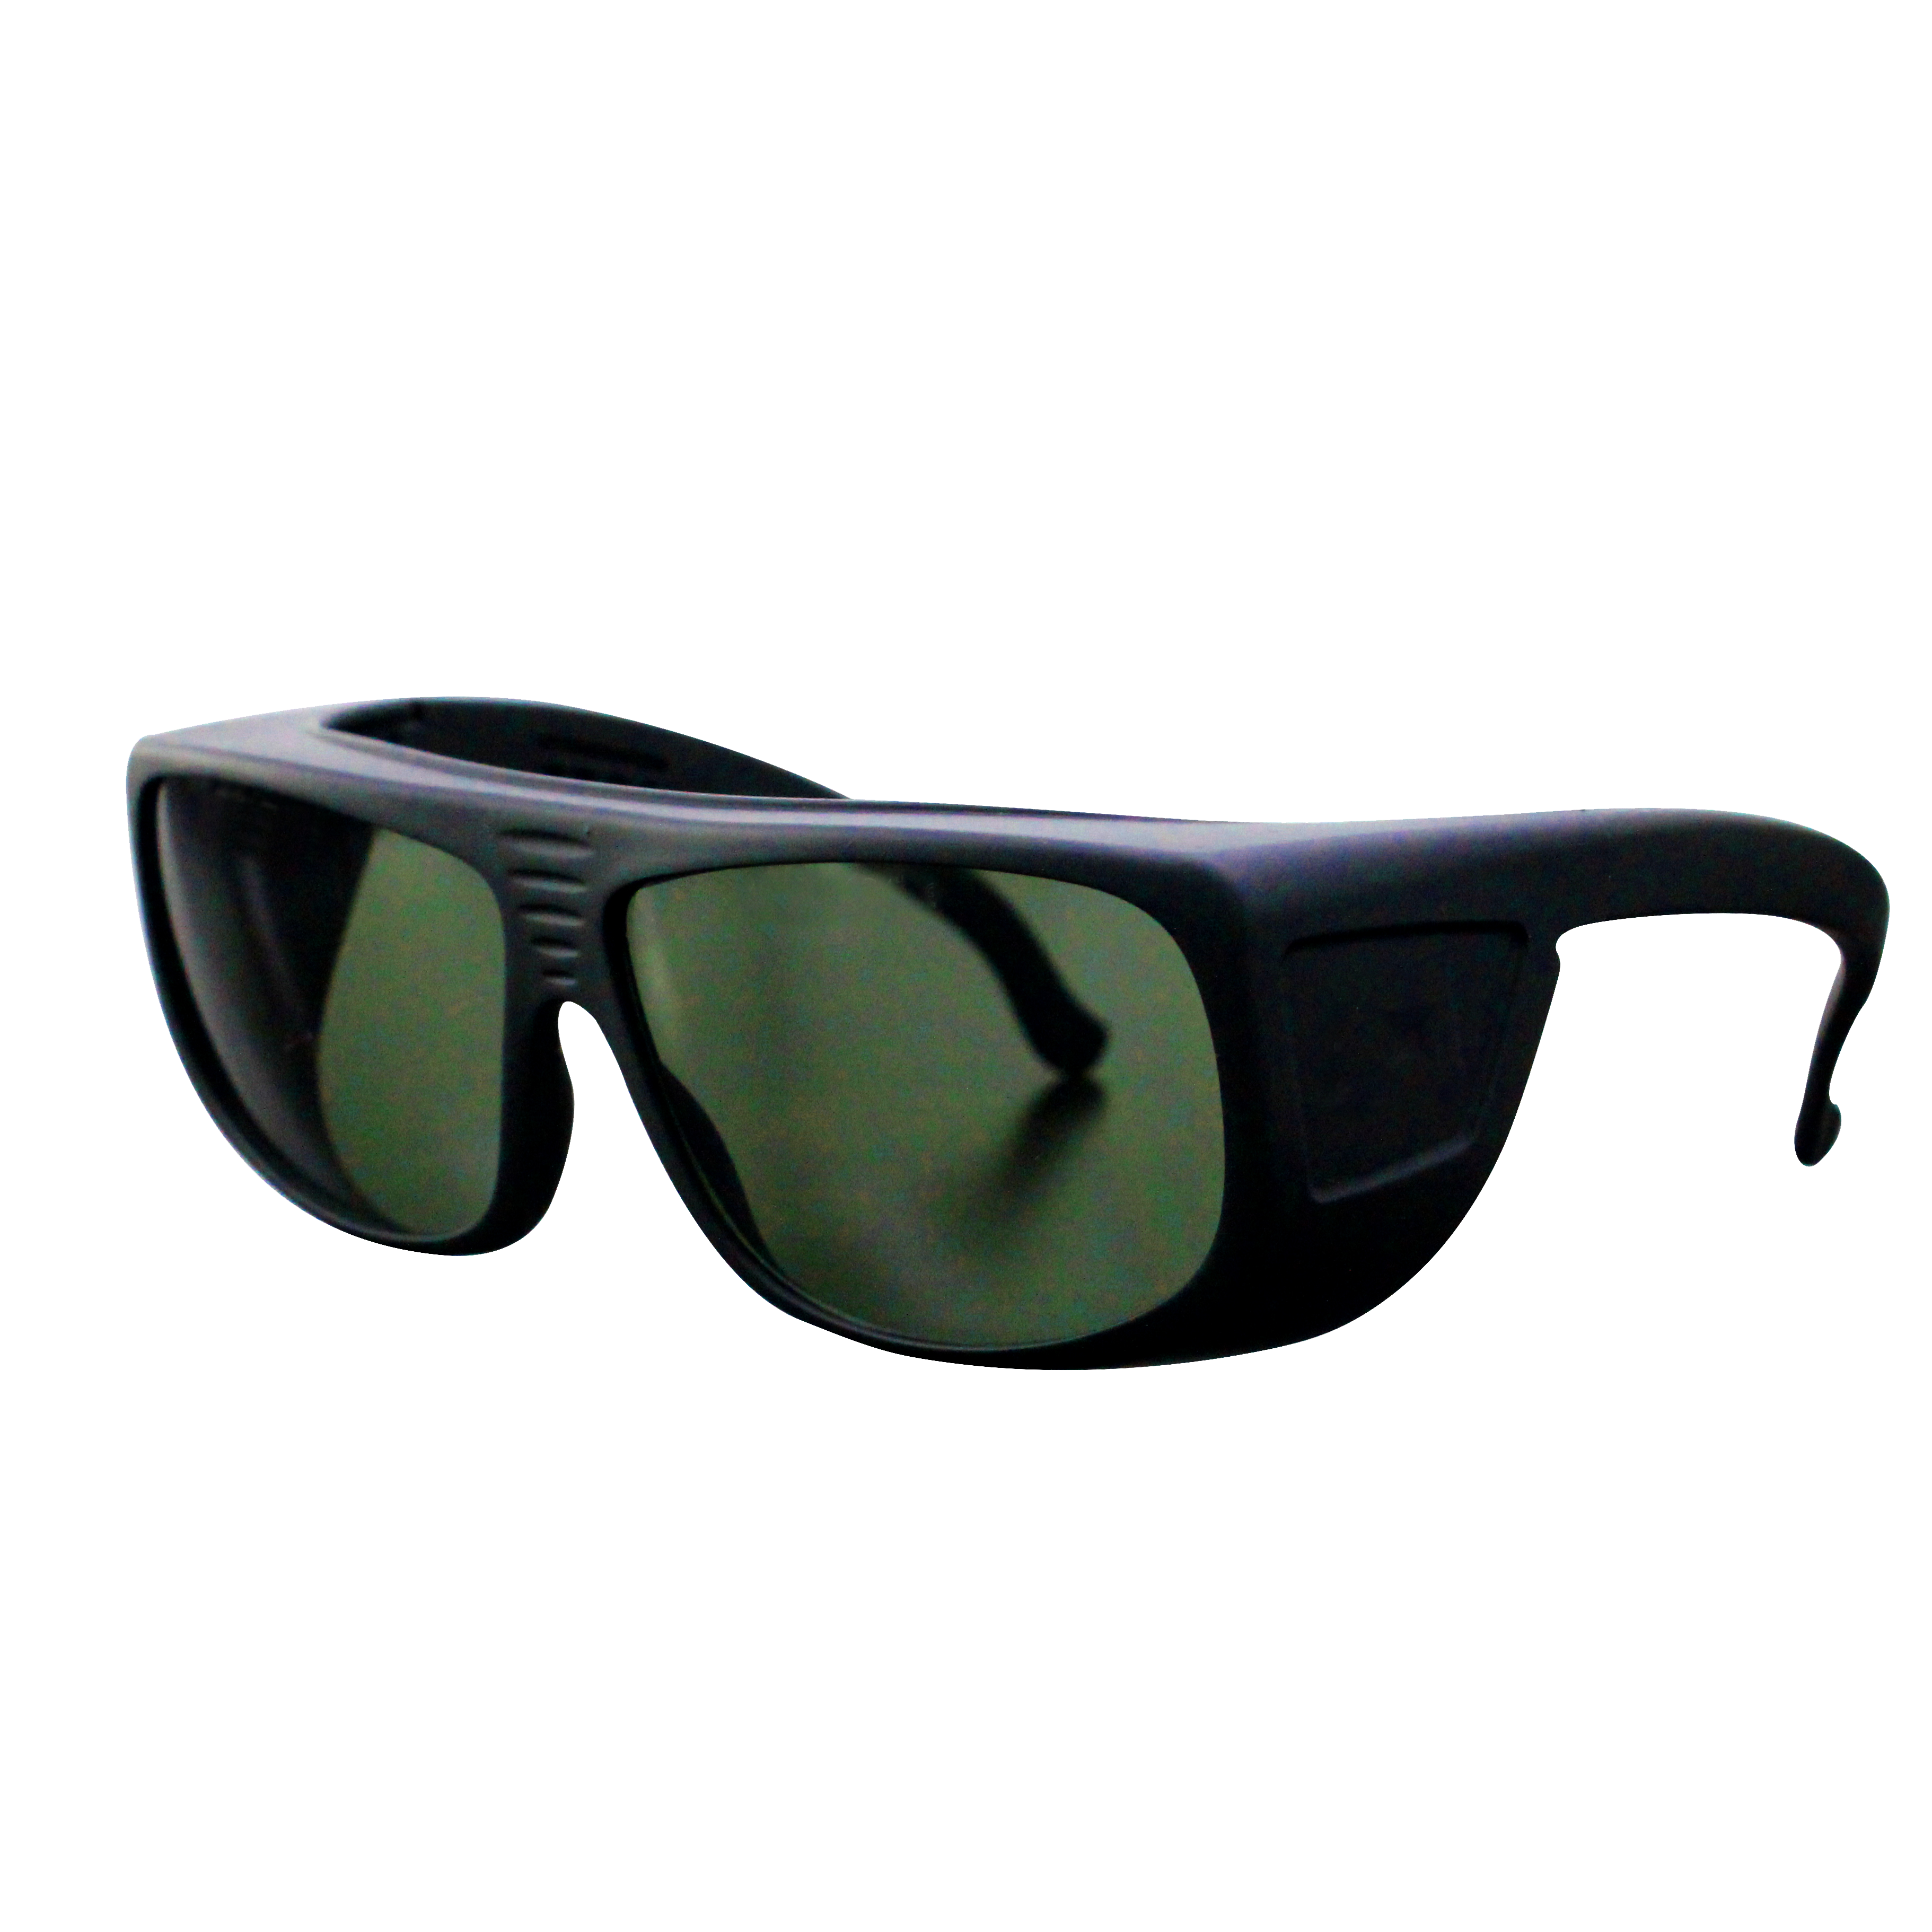 NOUALASER OD7+ 1064 нм волоконный лазер УФ защитные очки